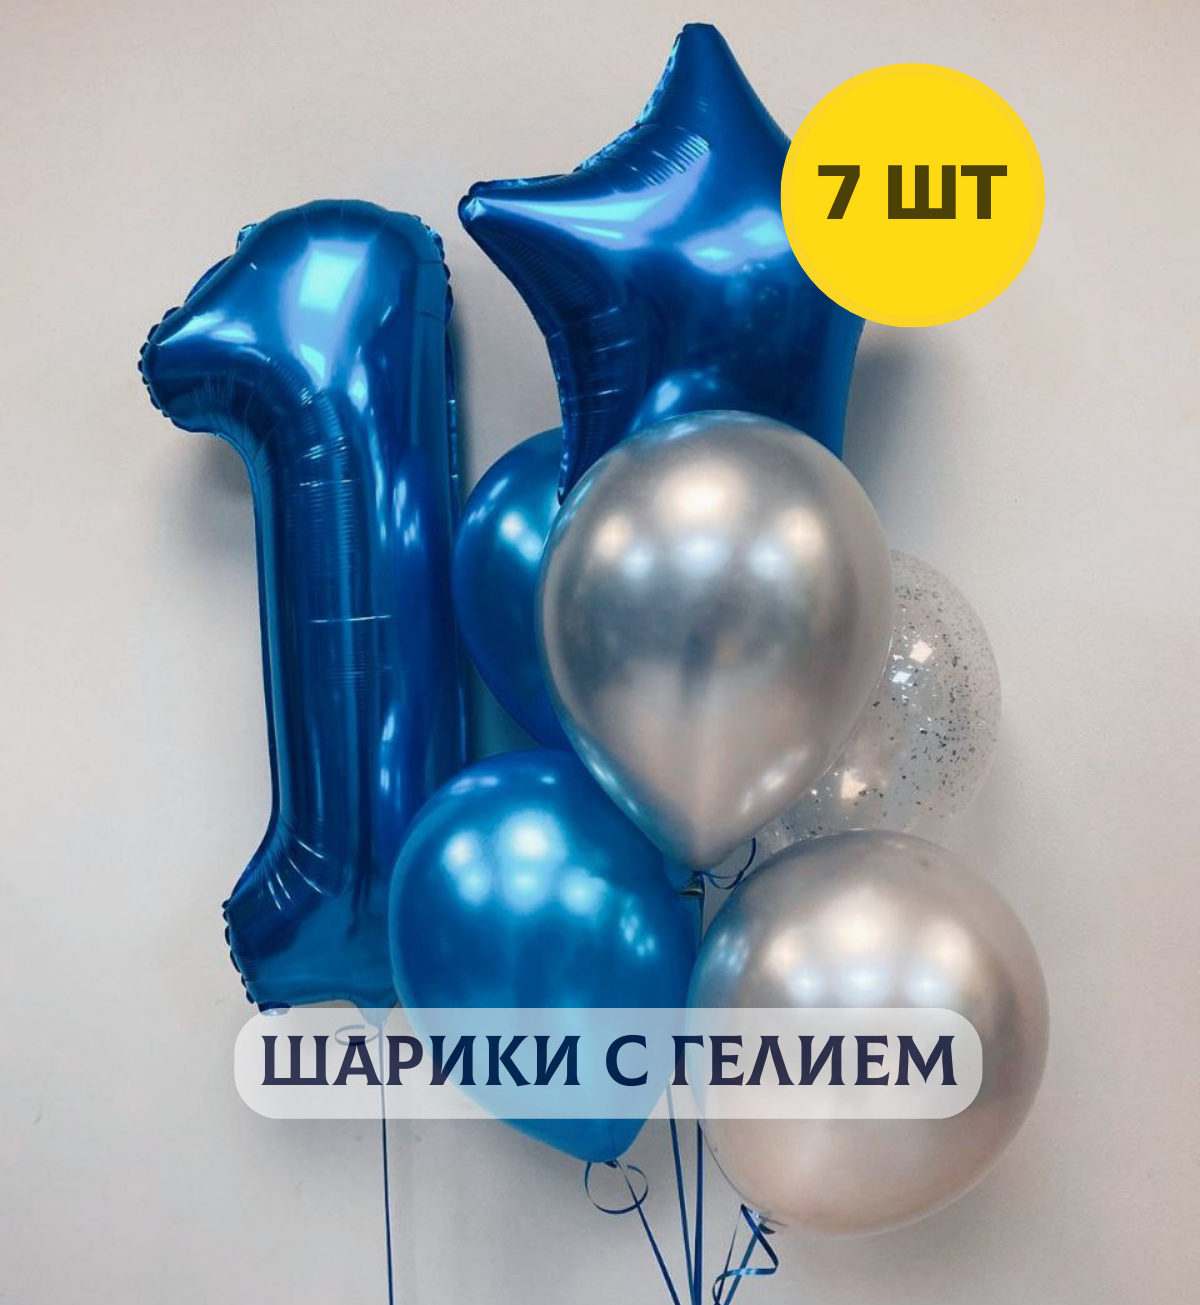 Воздушные шары с гелием на день рождения для мальчика "Любая цифра от 1 до 9 и связка из 6 шаров", цвет синий, серебристый